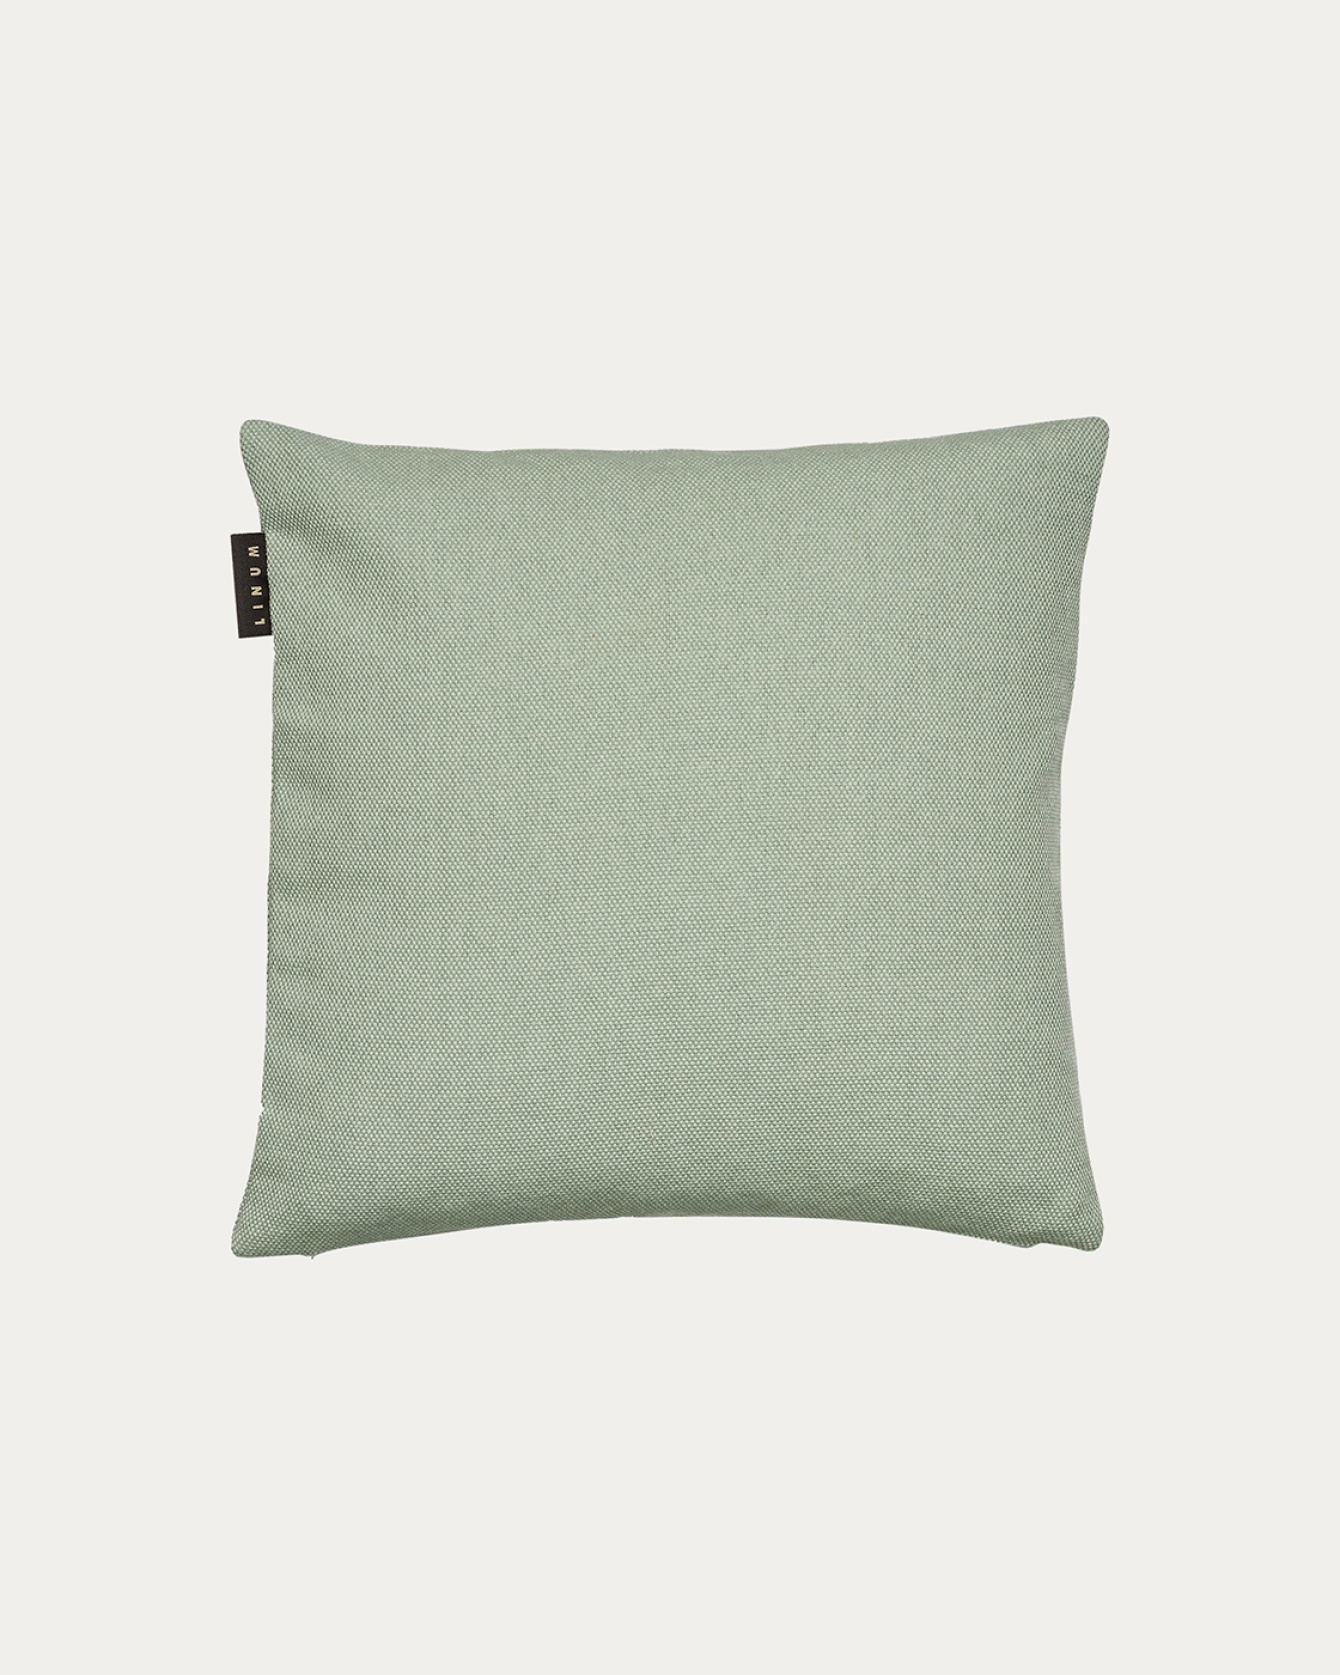 Produktbild helles eisgrün PEPPER Kissenhülle aus weicher Baumwolle von LINUM DESIGN. Einfach zu waschen und langlebig für Generationen. Größe 40x40 cm.